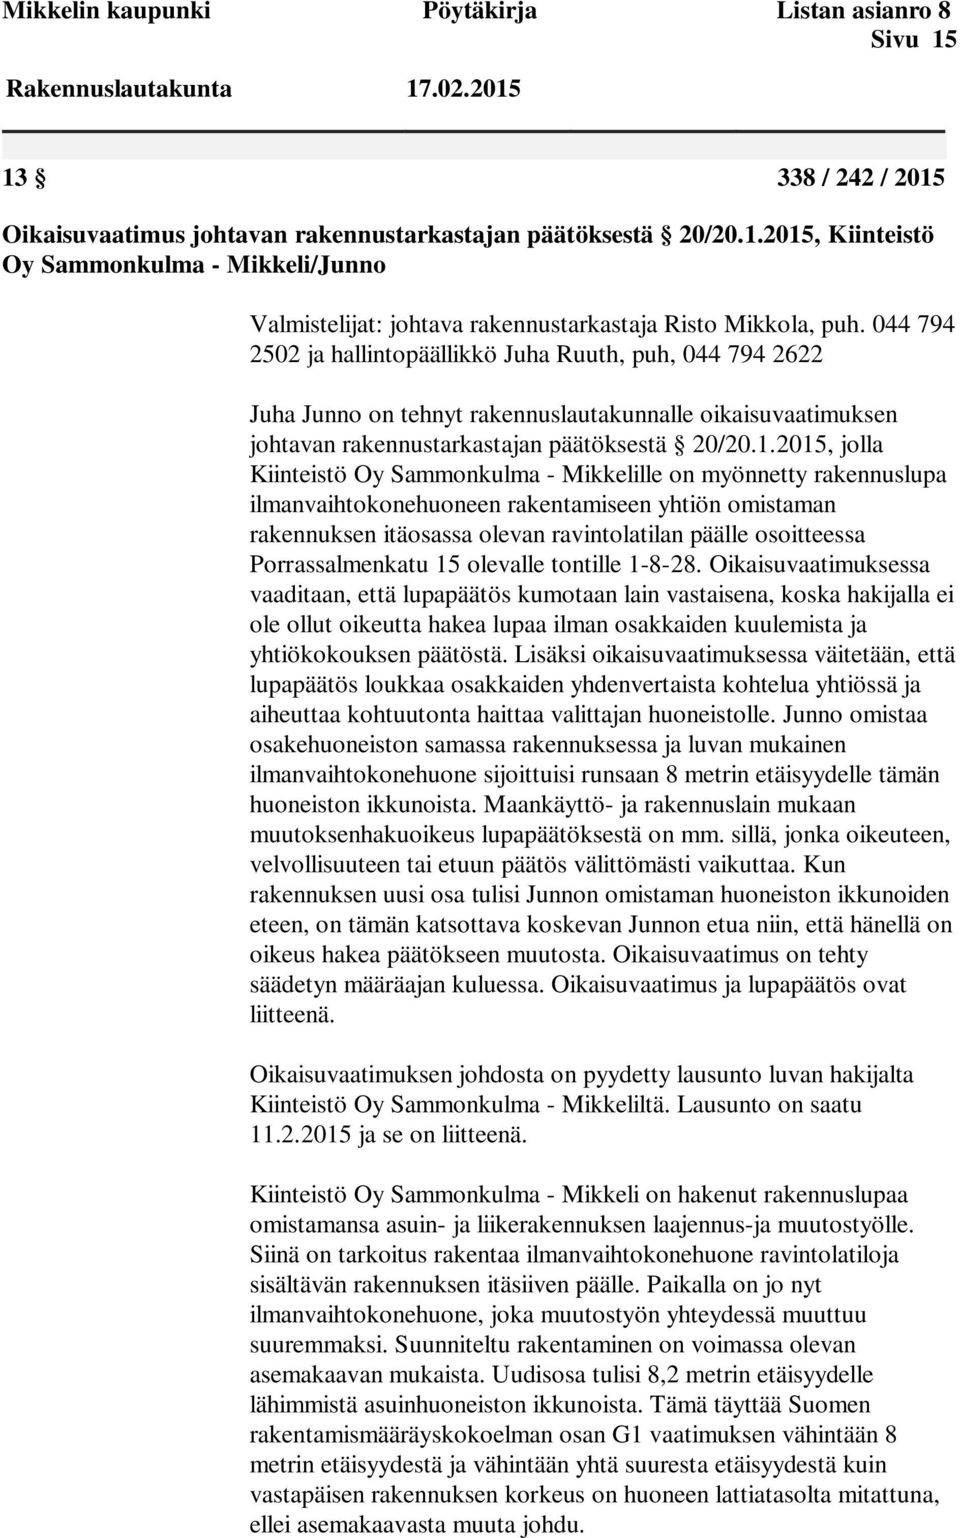 2015, jolla Kiinteistö Oy Sammonkulma - Mikkelille on myönnetty rakennuslupa ilmanvaihtokonehuoneen rakentamiseen yhtiön omistaman rakennuksen itäosassa olevan ravintolatilan päälle osoitteessa